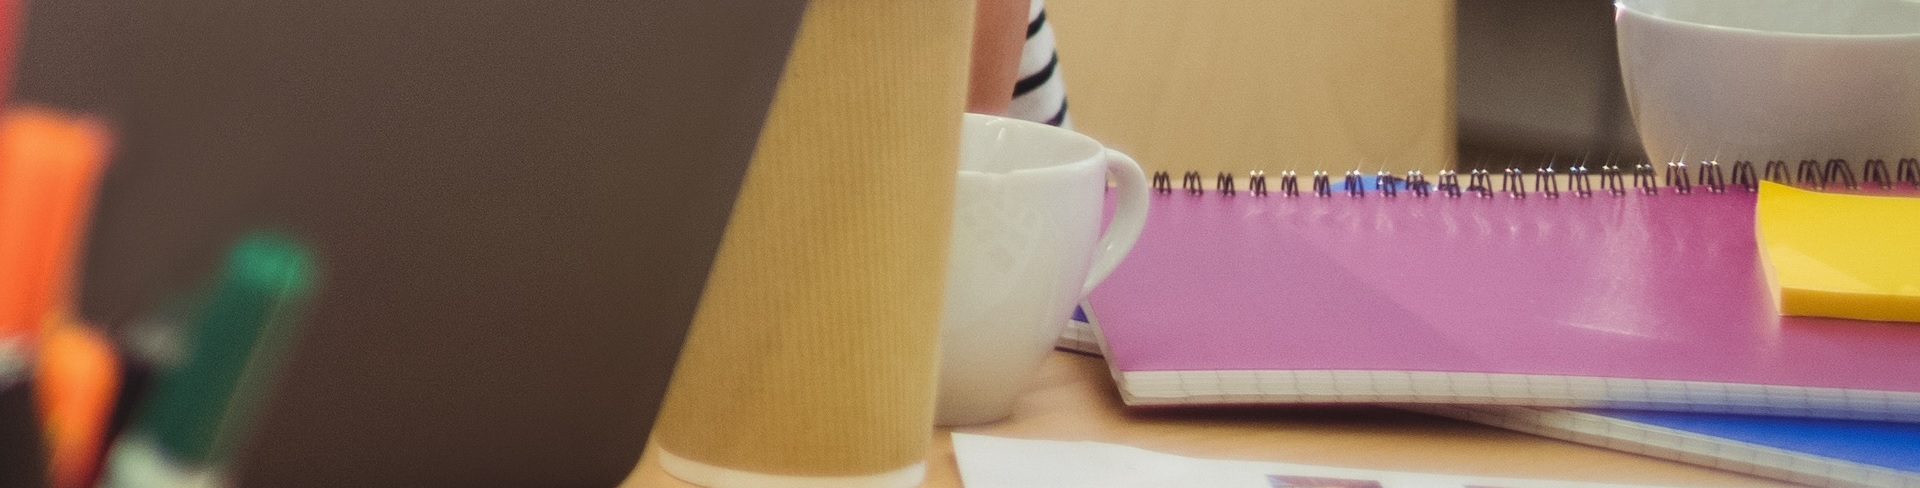 Skrivbord med svart laptop, vit kaffekopp, gula Post-It-lappar och ett par anteckningsböker, rosa respektive blå.